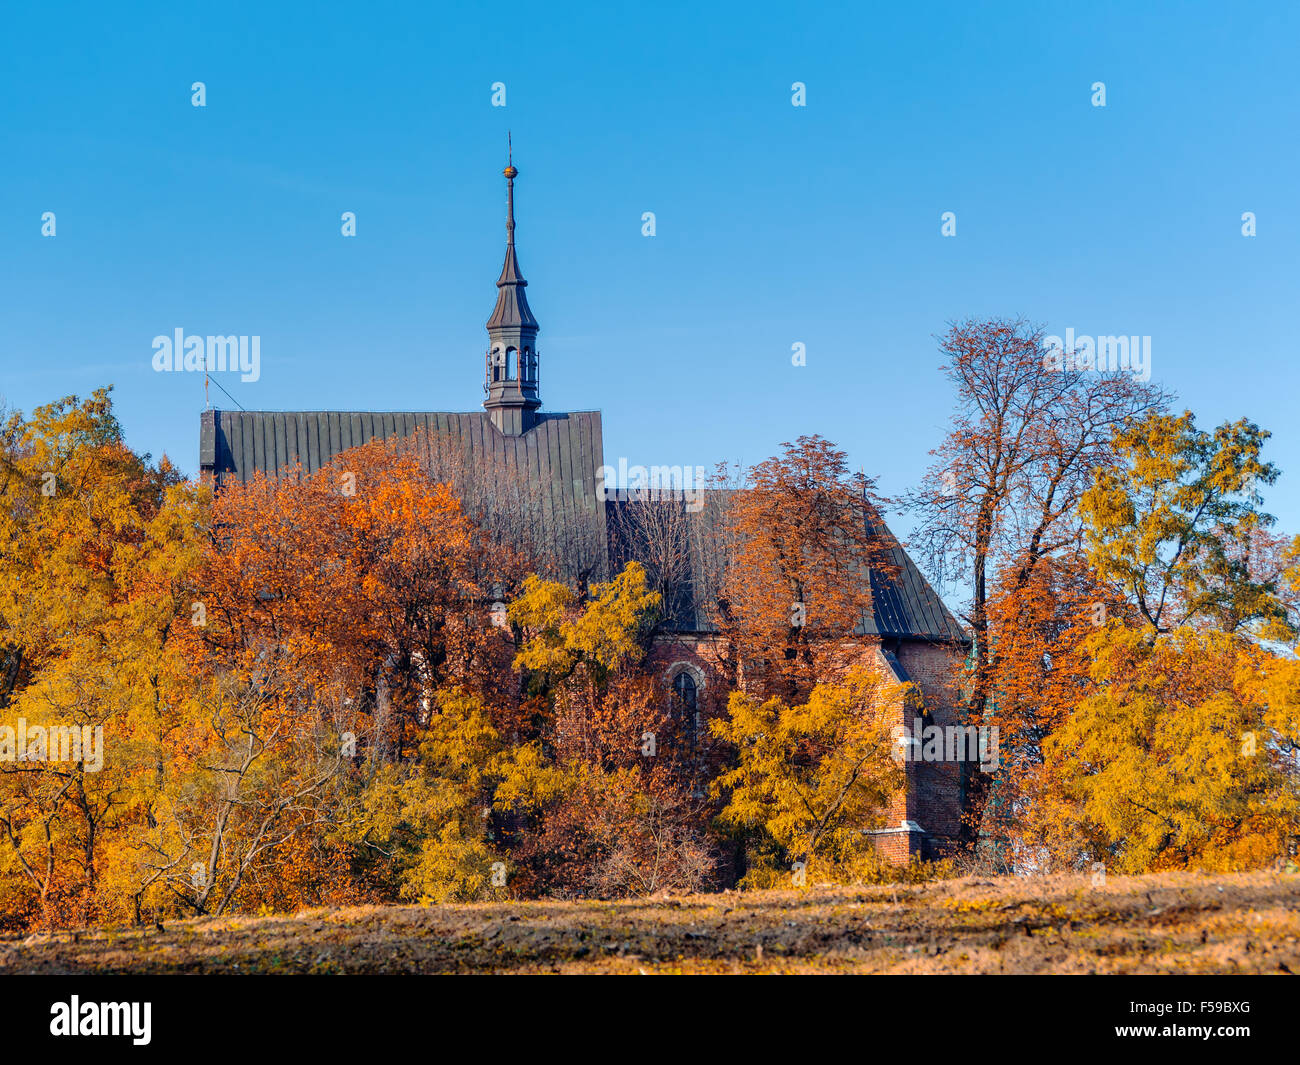 Lande alt-katholischen Kirche, umgeben von Bäumen in Herbstfarben mit klaren blauen Himmel Stockfoto